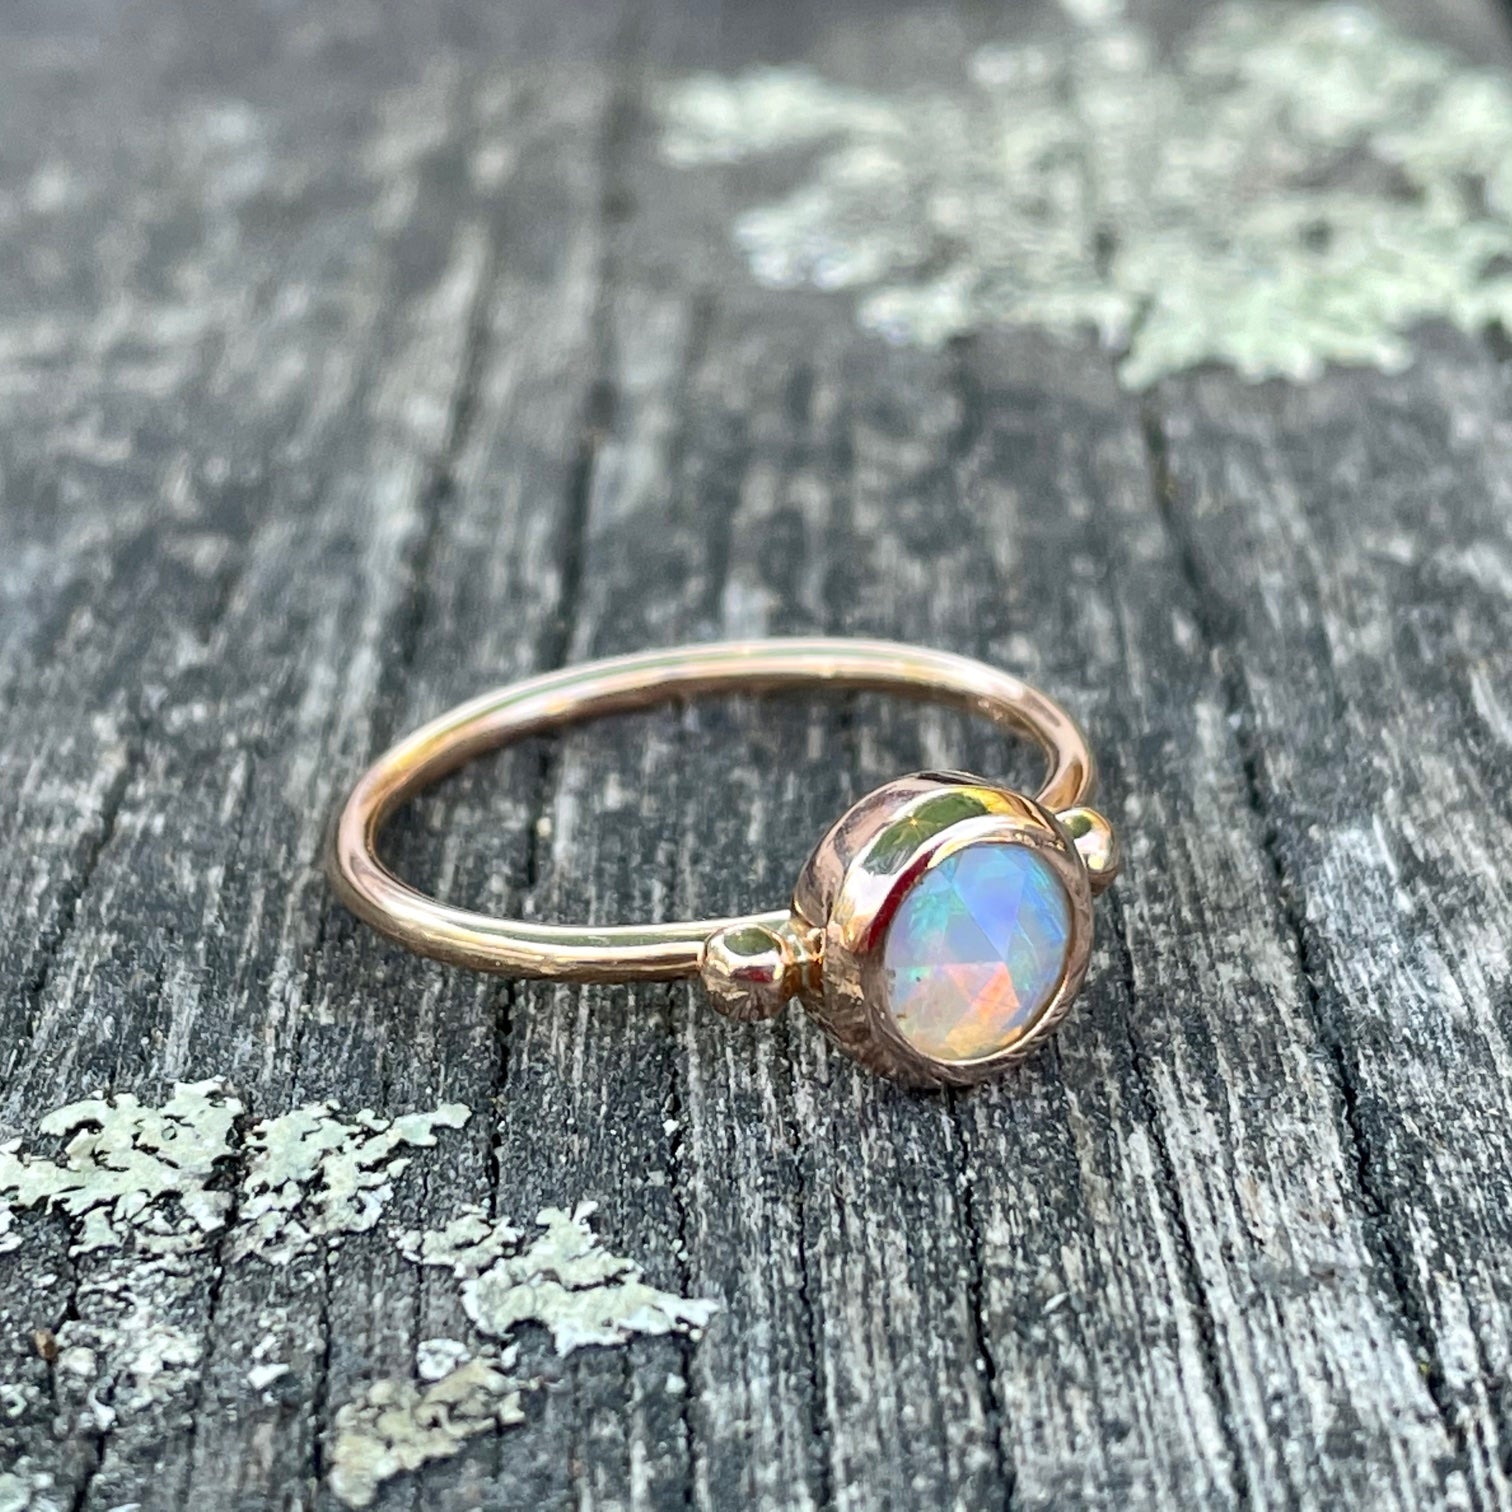 Australian opal rings